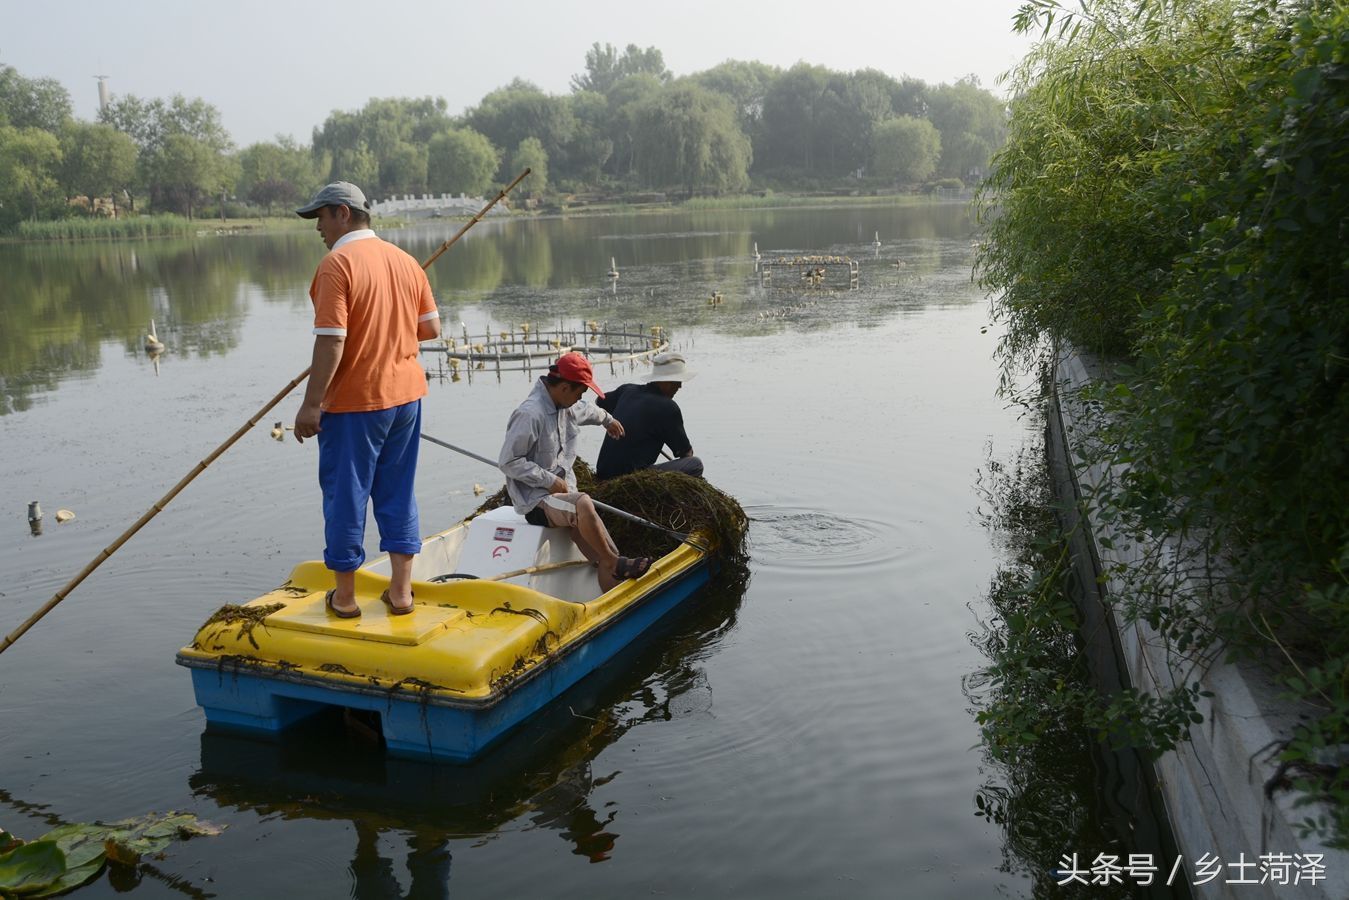 菏泽仨农民工划着船干活一天工资120块钱,看着